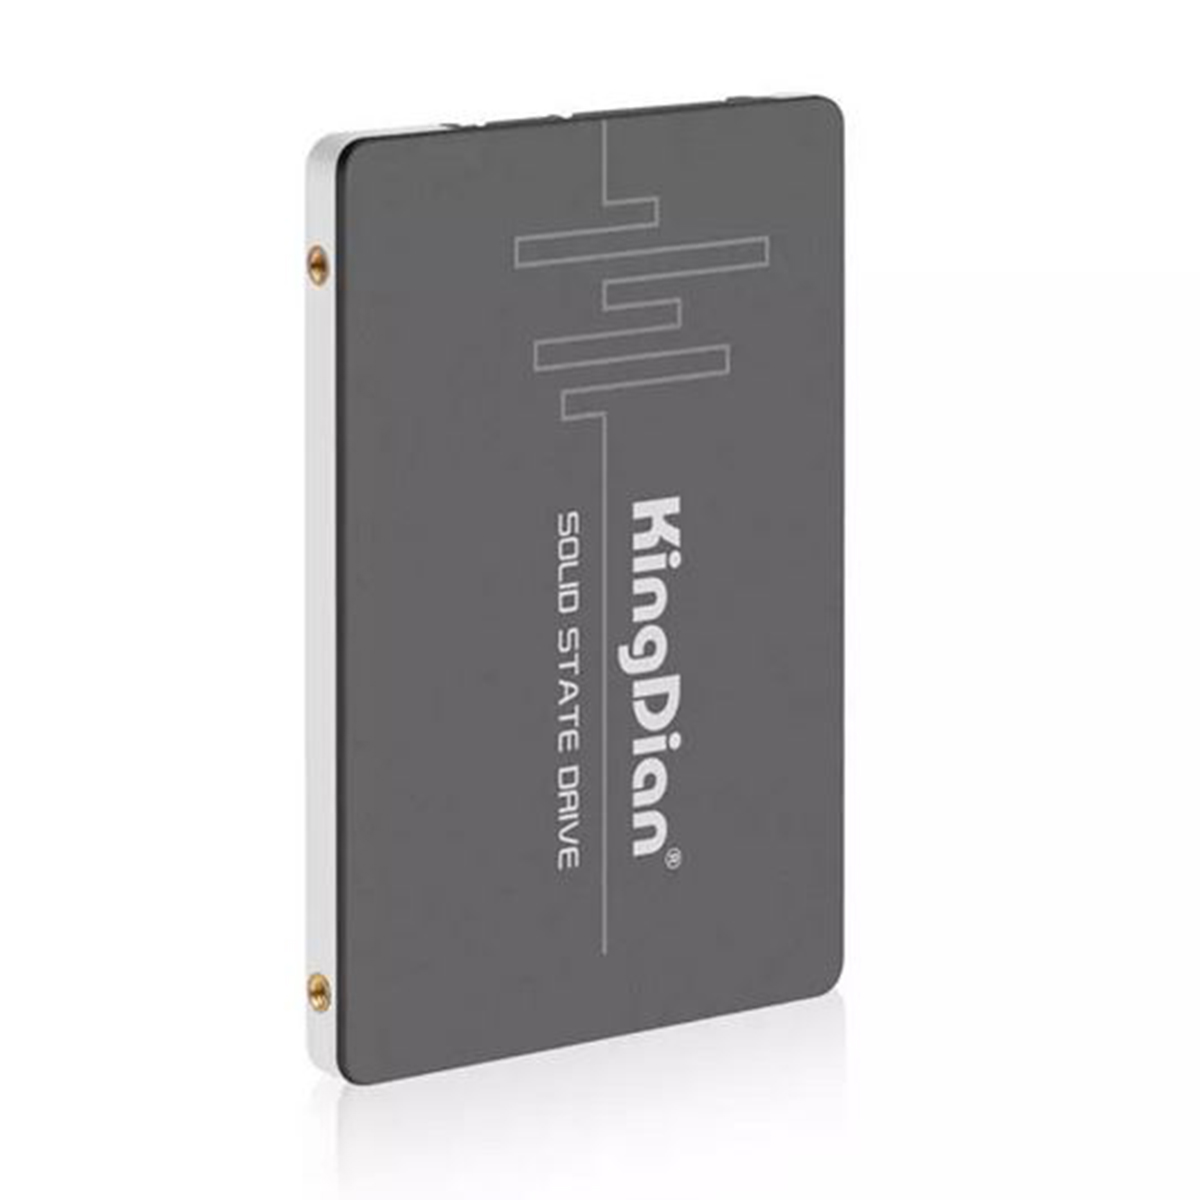 SSD Kingdian - S280 240 GB - Notebook Ultrabook PC Desktop